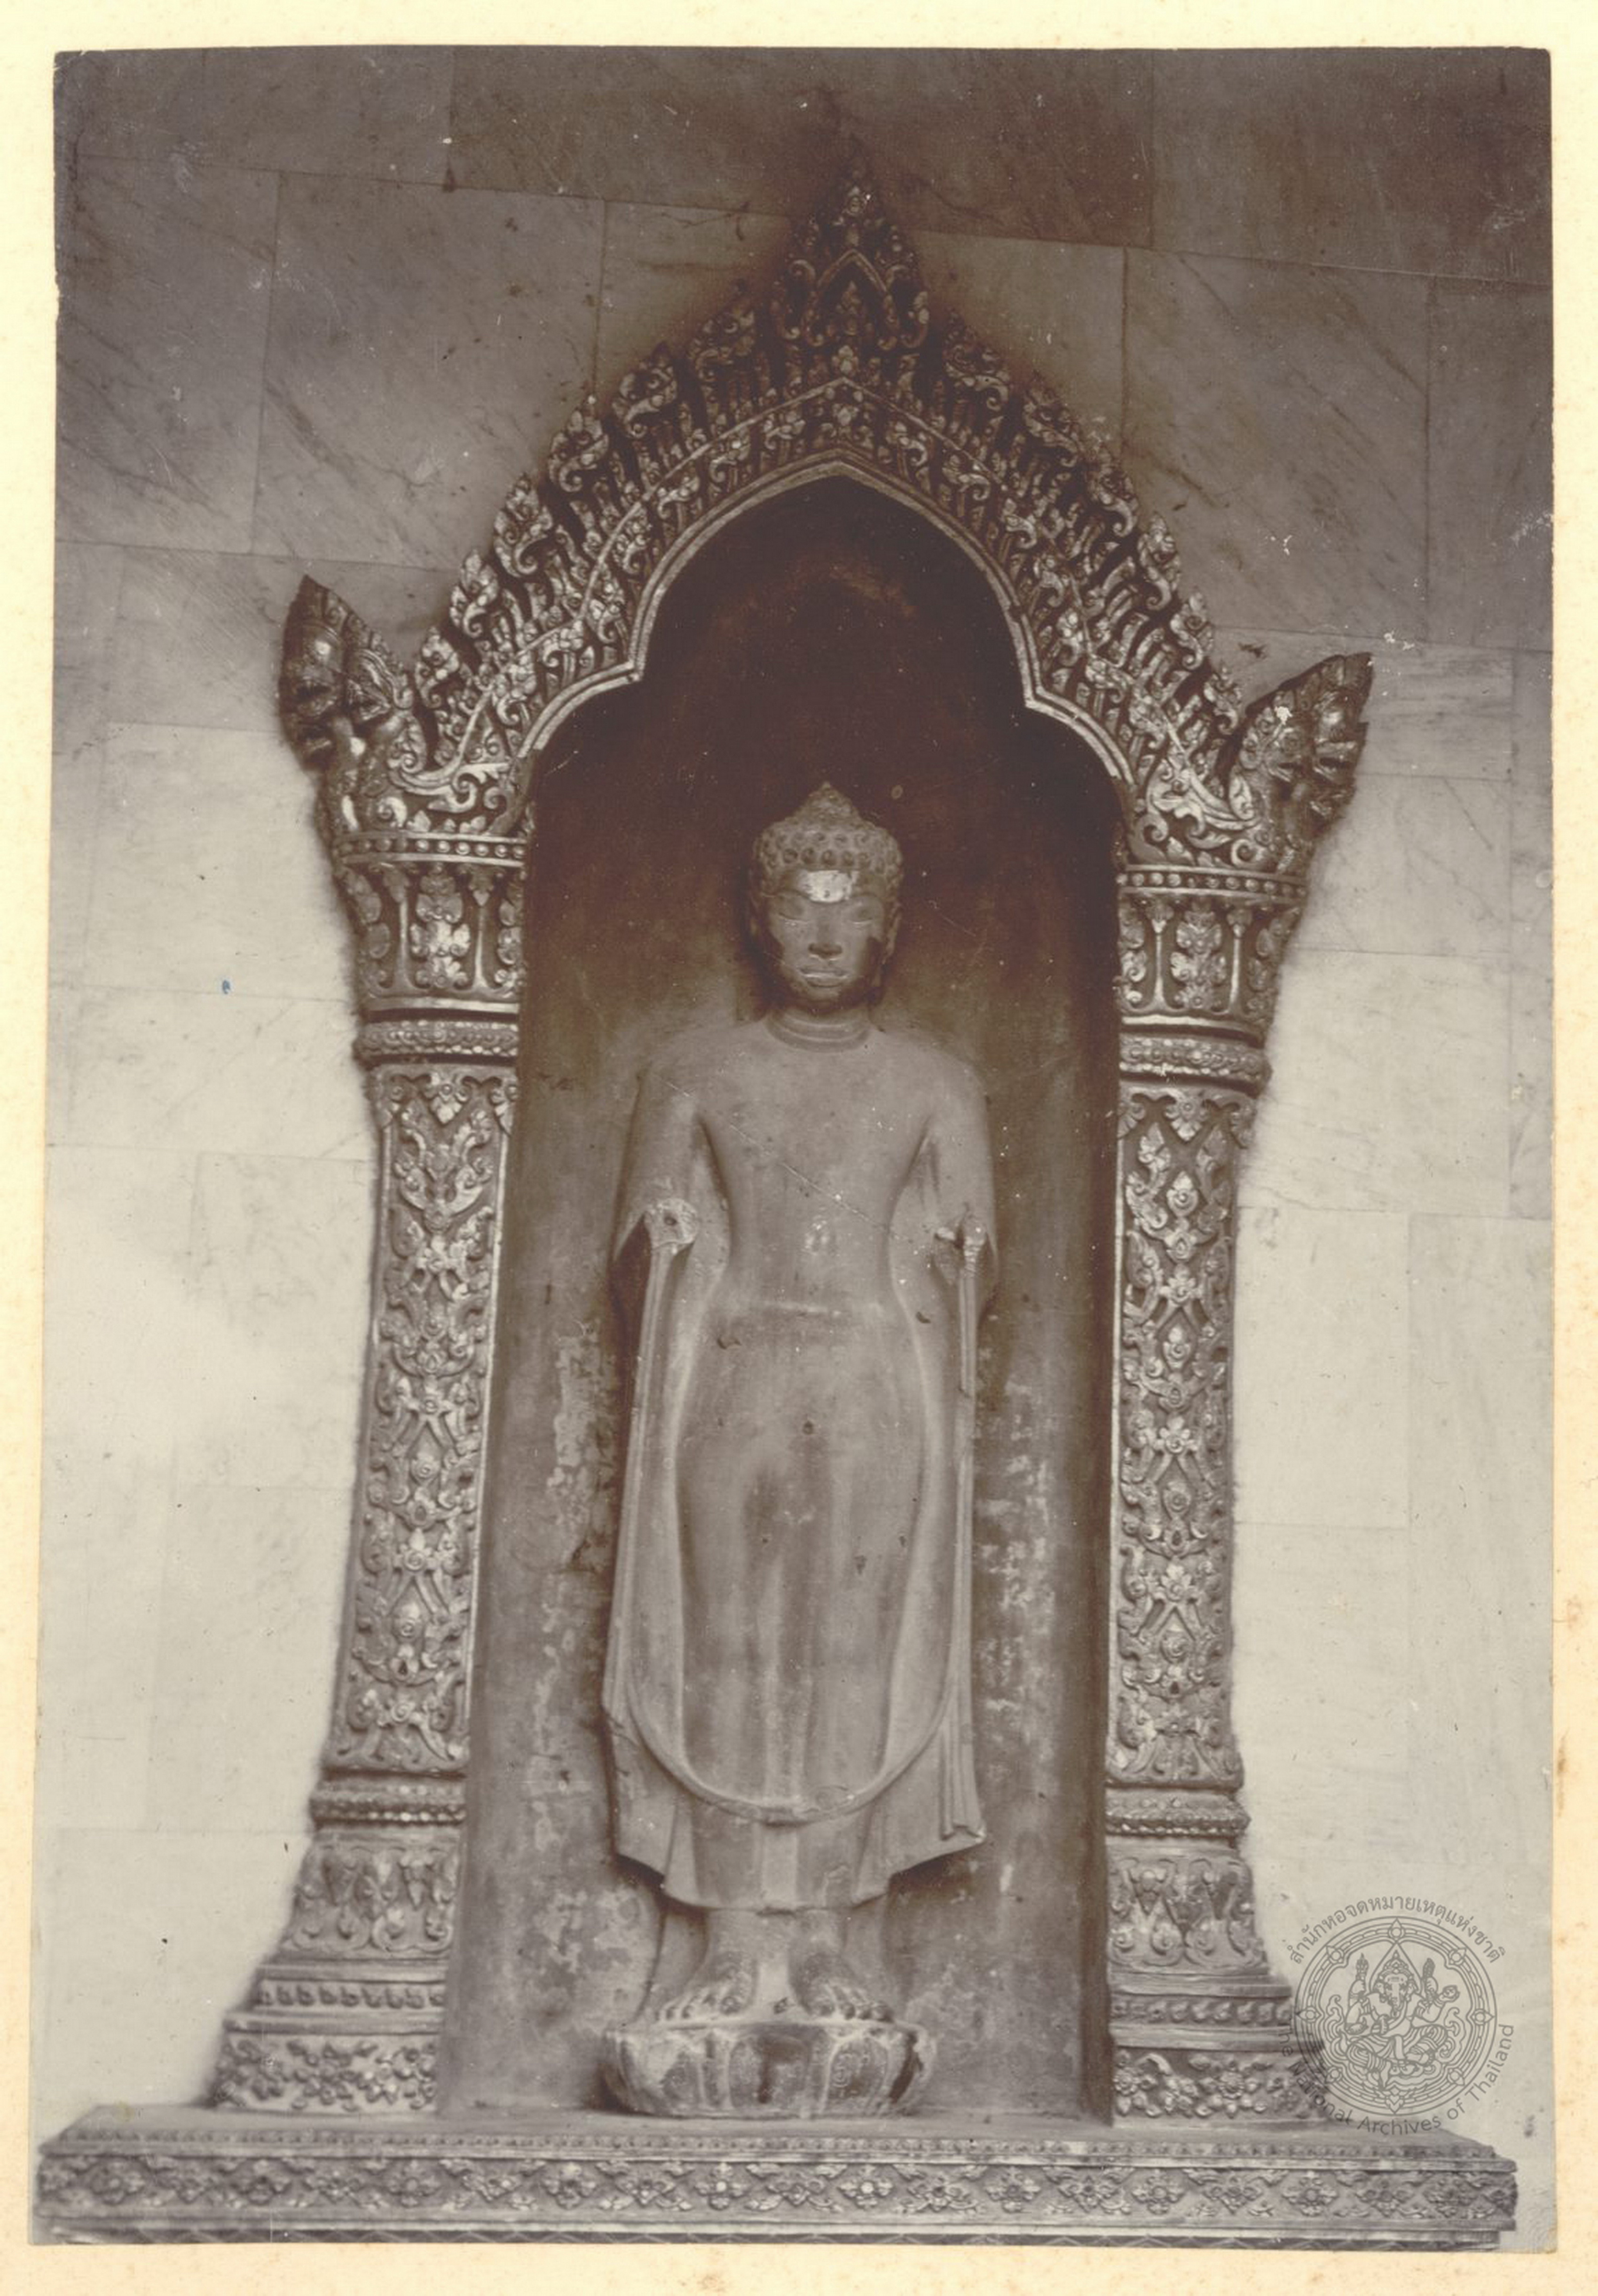 พระพุทธรูปศิลาสมัยทวาราวดี เดิมอยู่เมืองลพบุรี พระยาโบราณราชธานินทร์ เชิญมาไว้ที่พิพิธภัณฑสถานอยุธยา